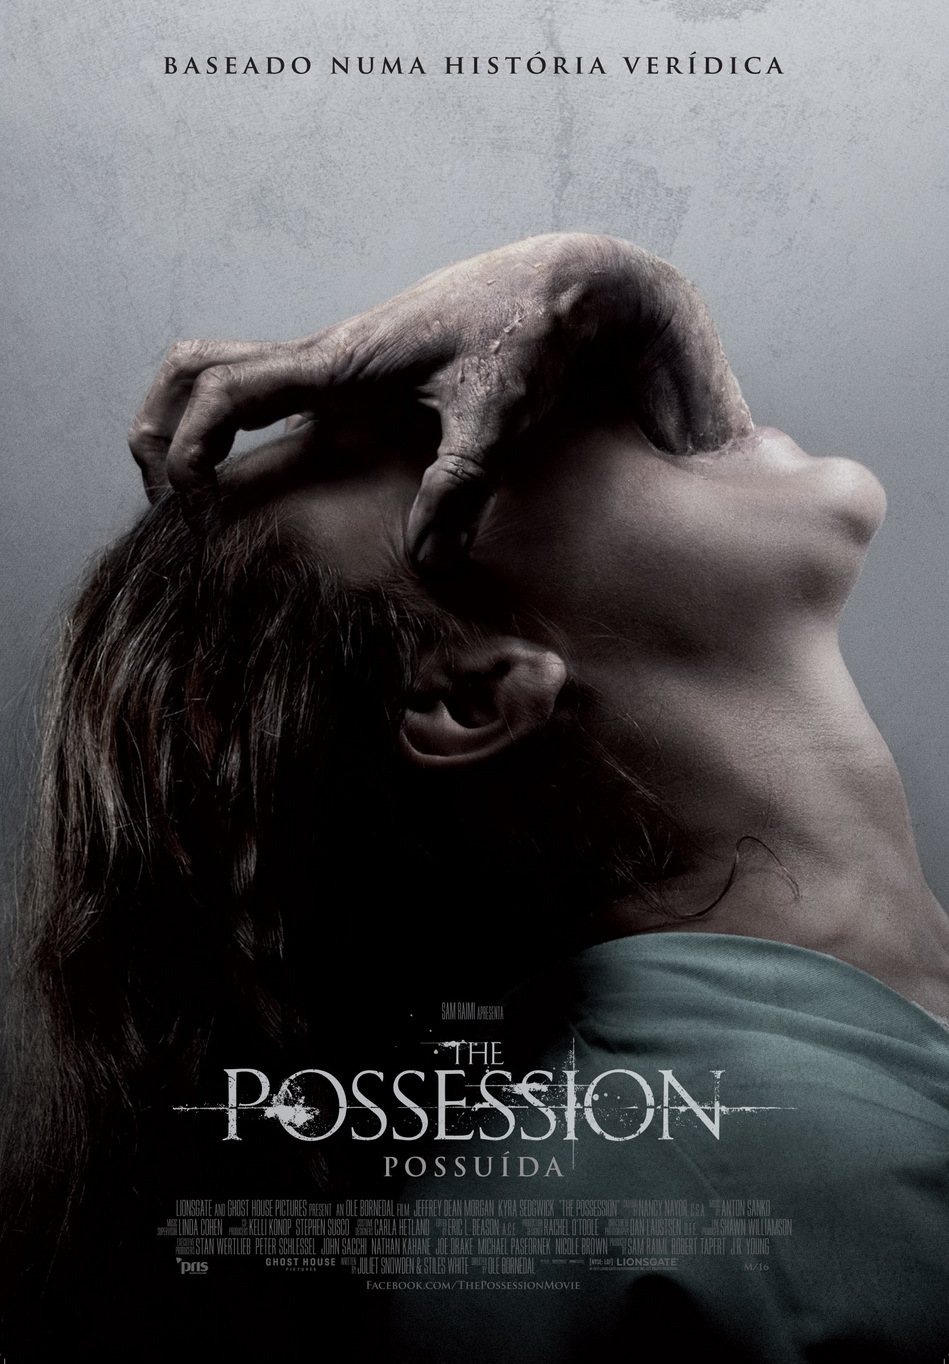 The Possession - Possuída - SAPO Mag